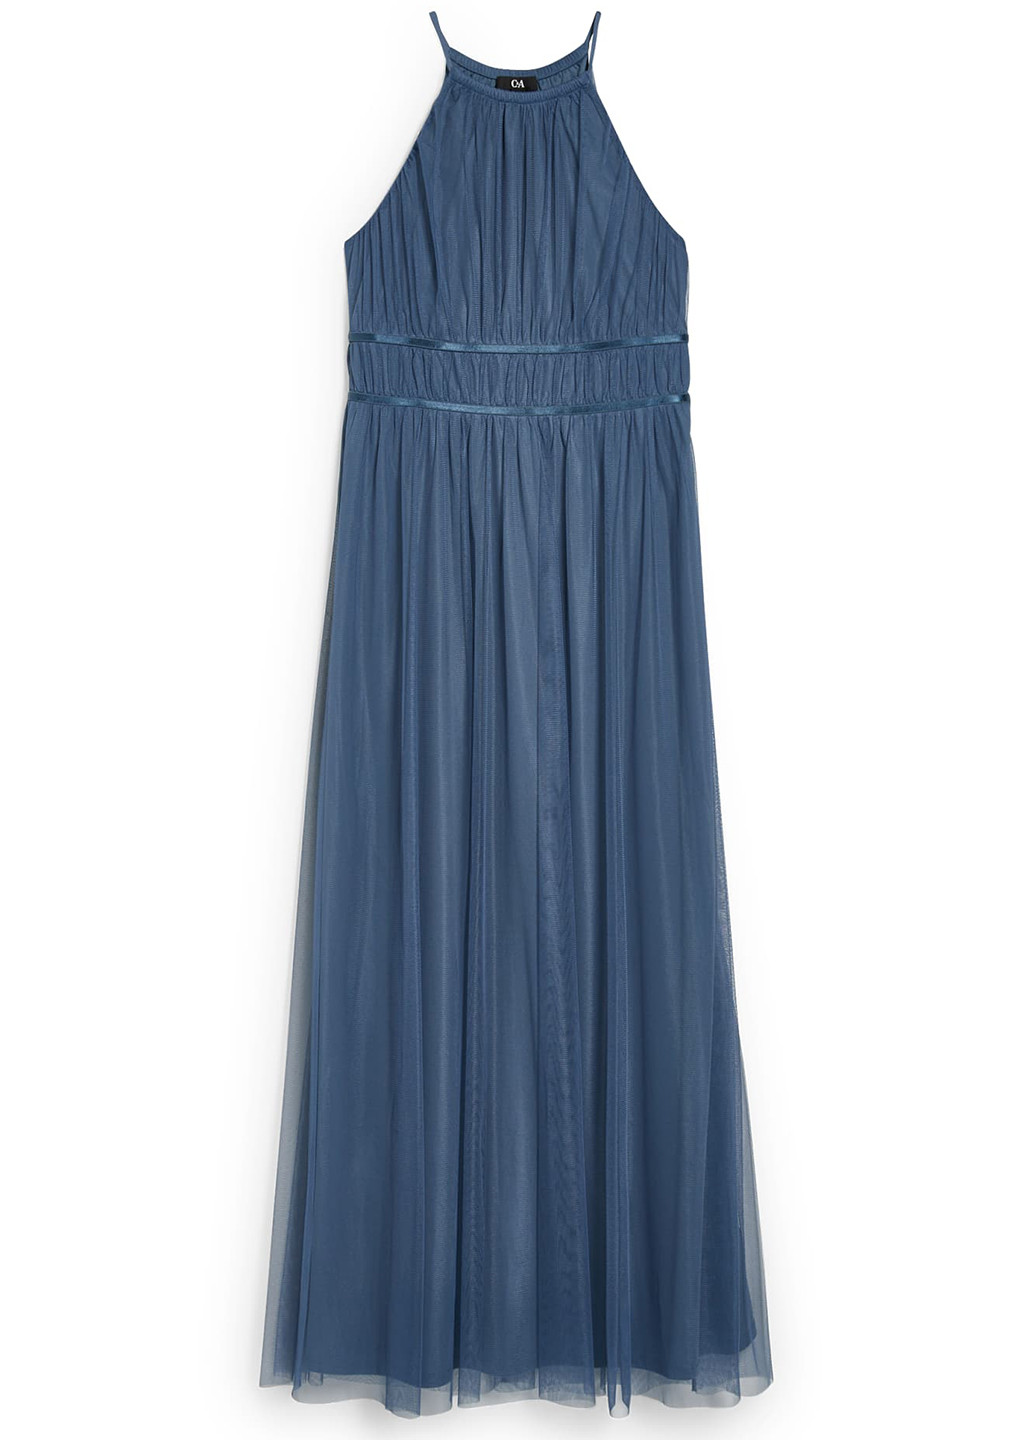 Синее коктейльное платье в греческом стиле, с открытыми плечами C&A однотонное